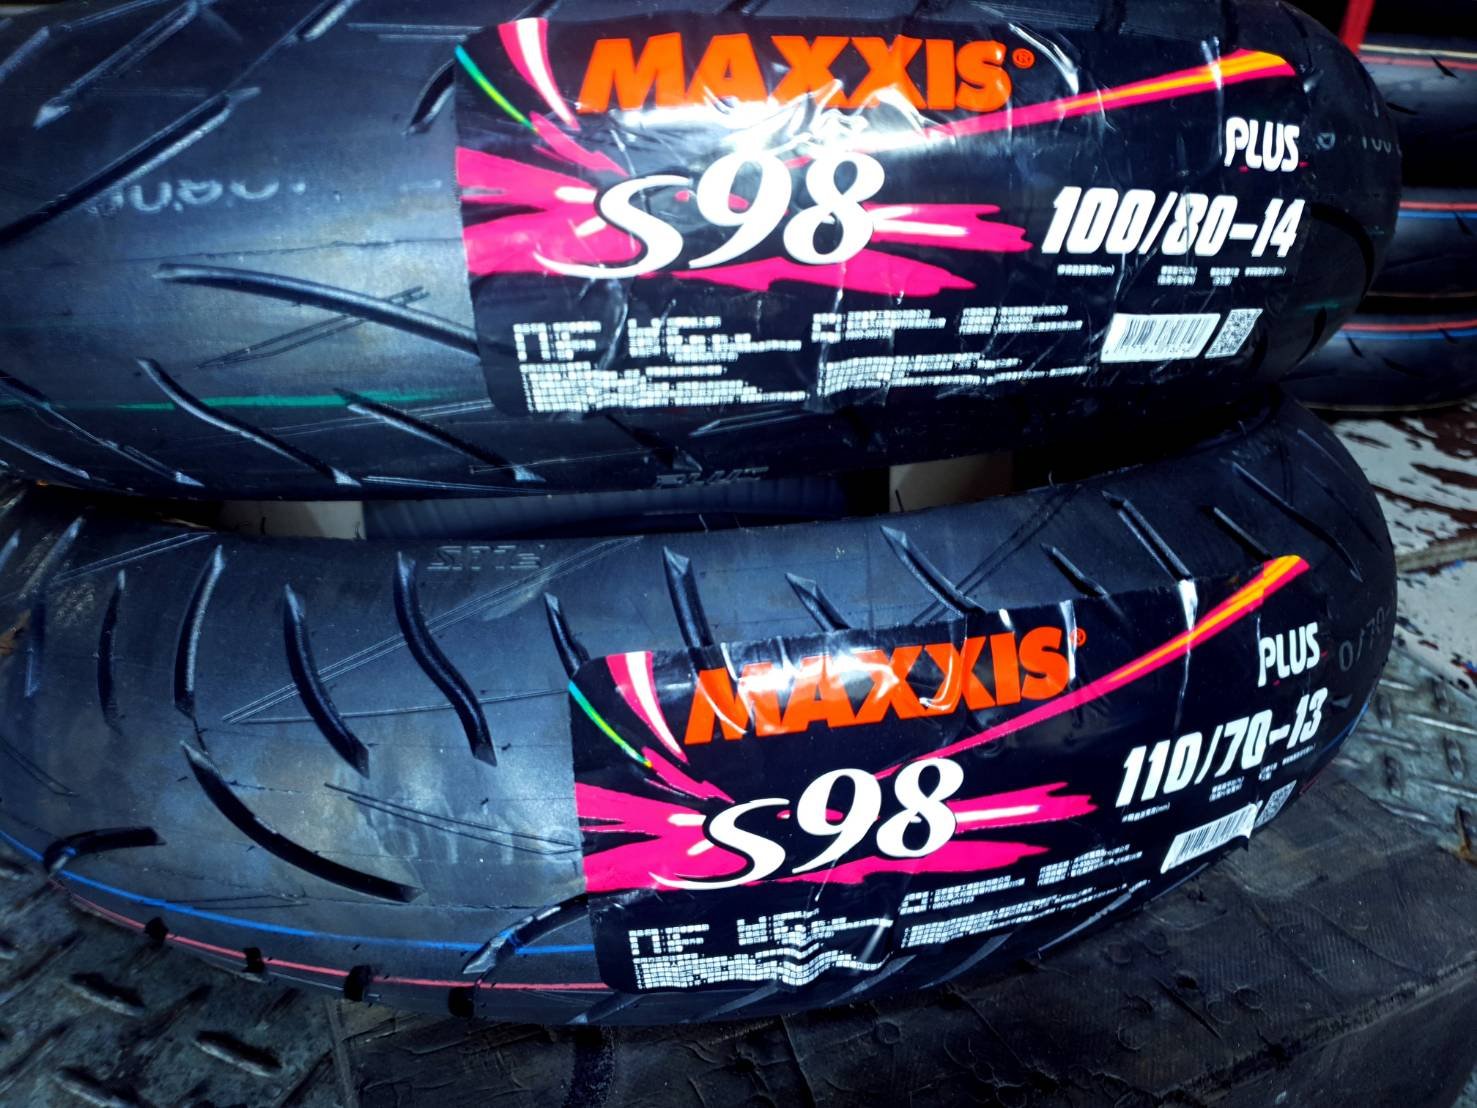 Gogoro2 瑪吉斯 MAXXIS 100/80-14 S98  PLUS 機車輪胎 機車胎  售價 2250元